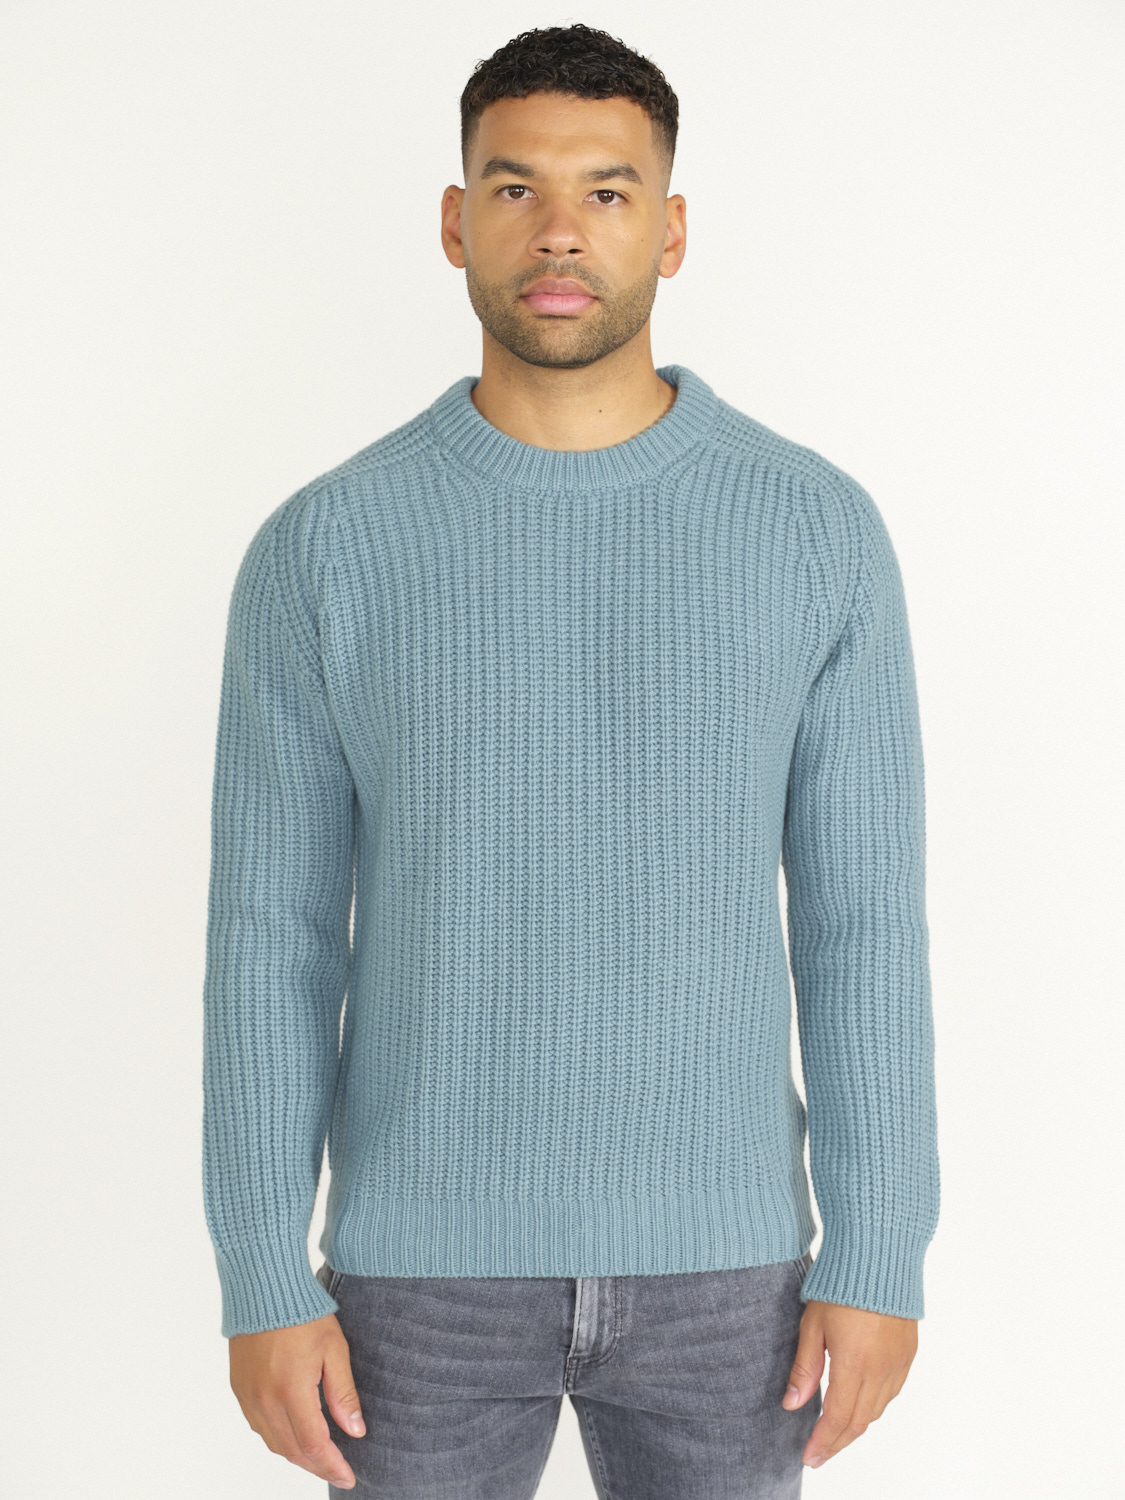 Stephan Boya Mood Rib Sweater - Rib knit sweater blue L